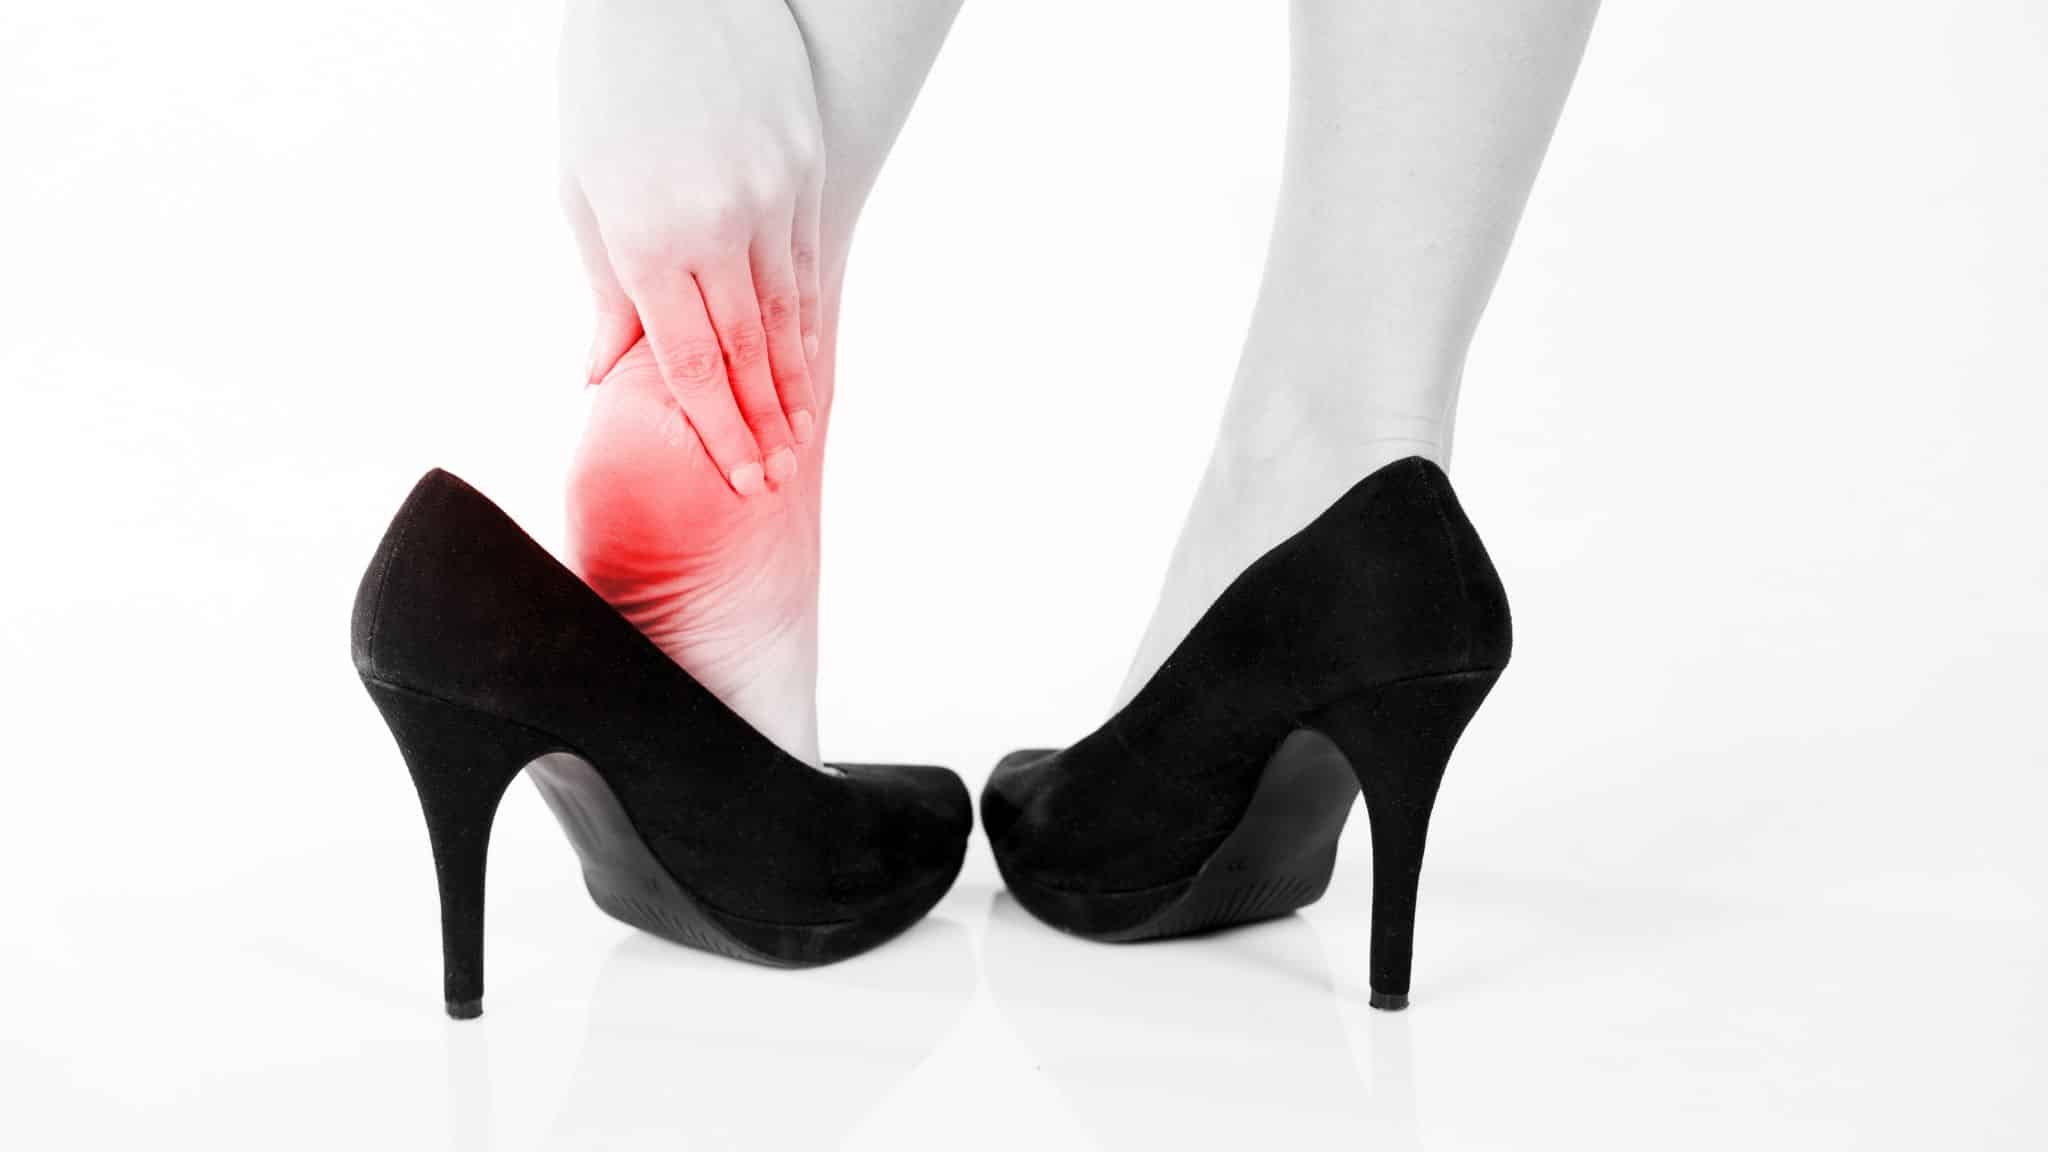 Female pain in heel wearing high heels